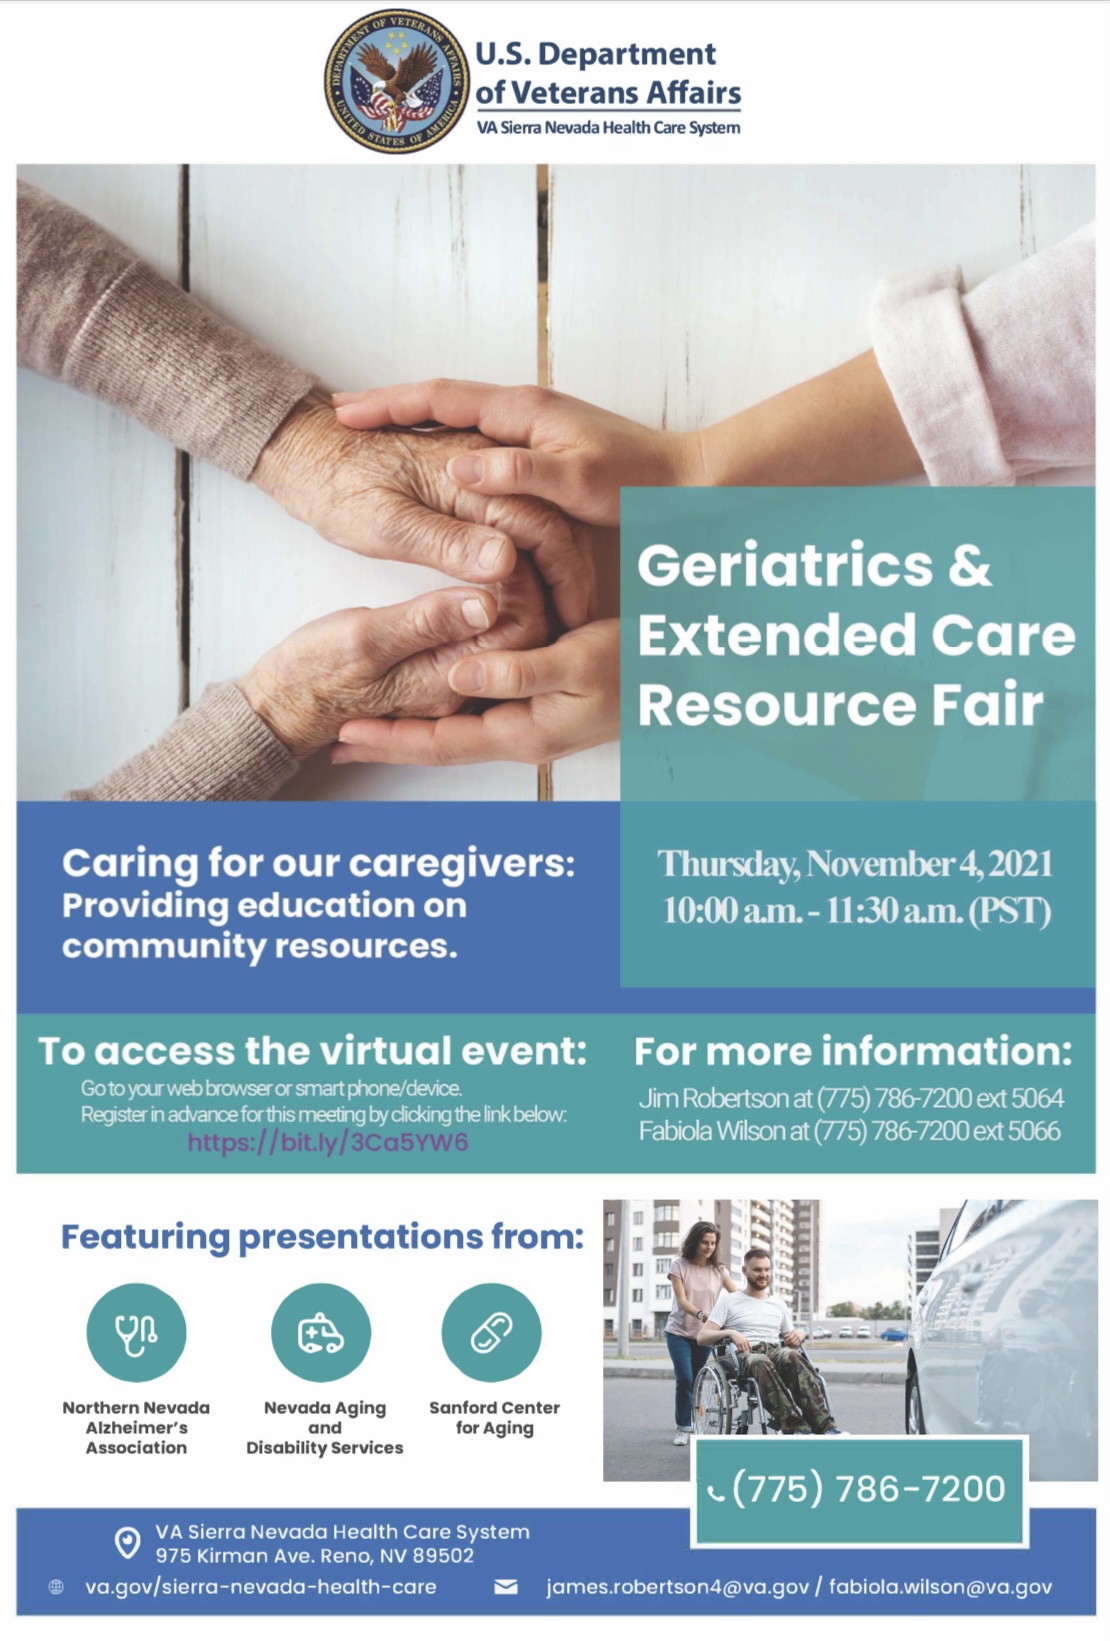 VA Geriatrics & Extended Care Resource Fair